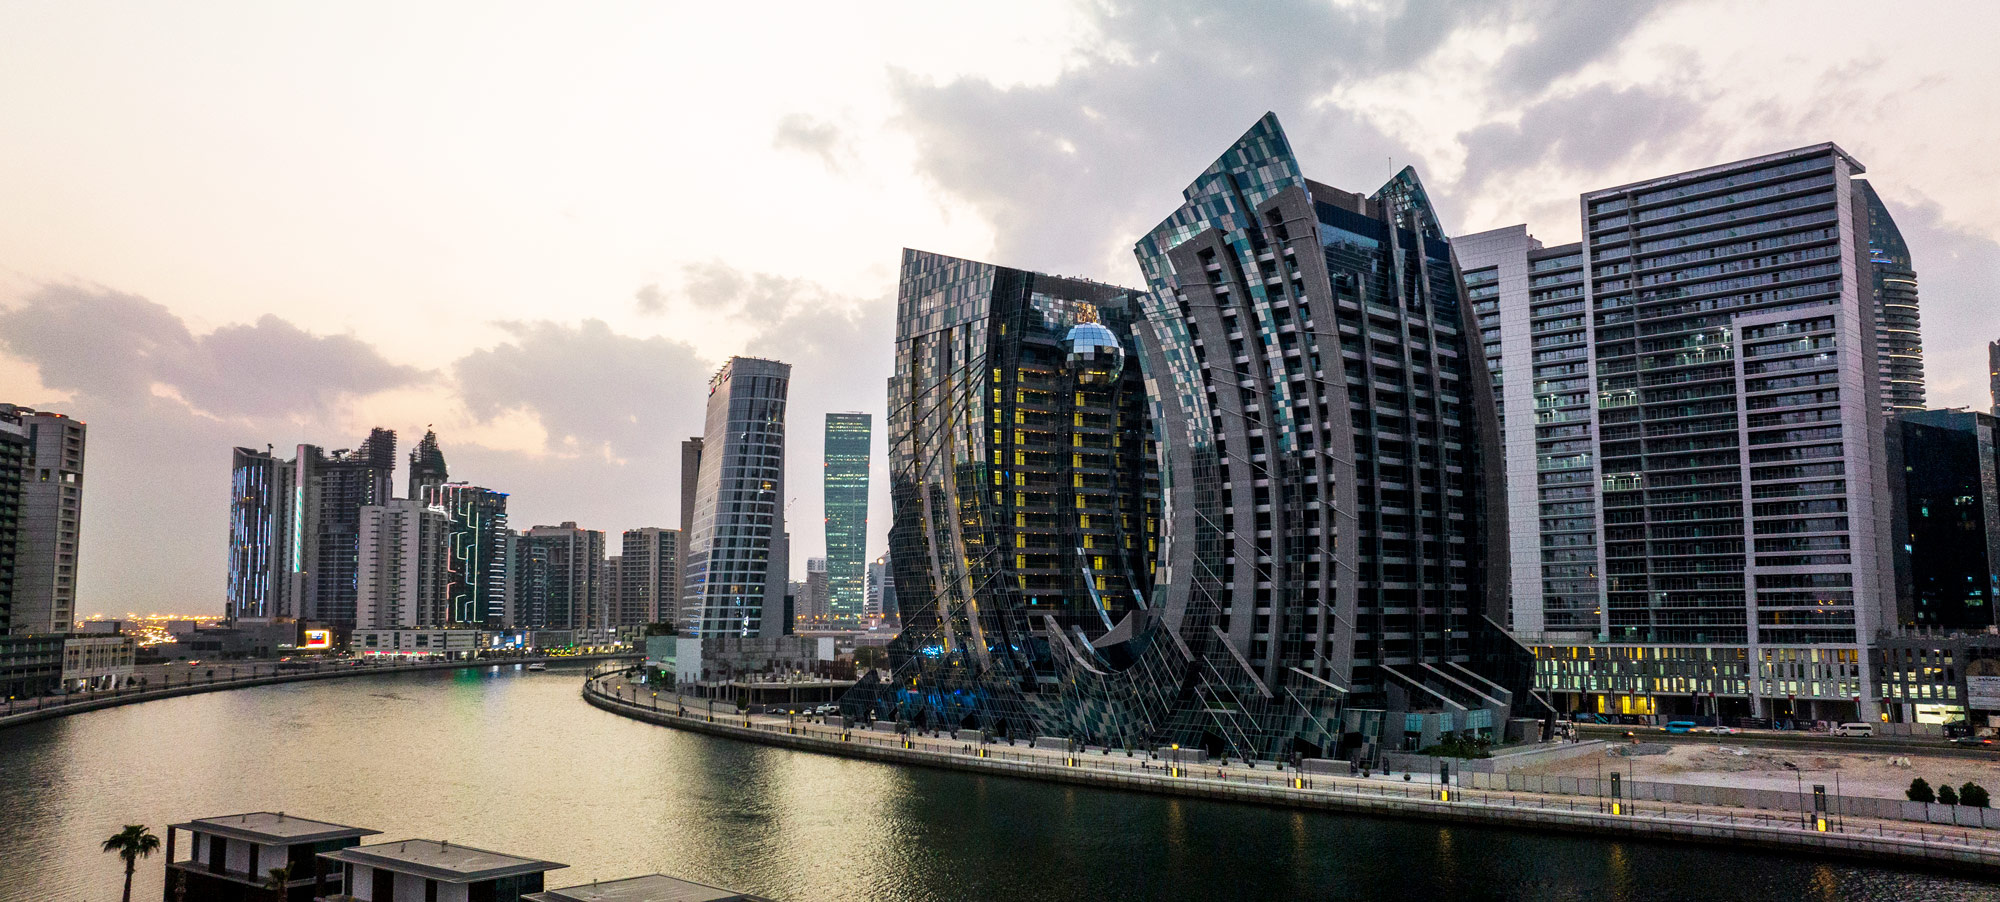 Апартаменты DaVinci Tower от Pagani и Dar Al Arkan в Бизнес Бэй, Дубай